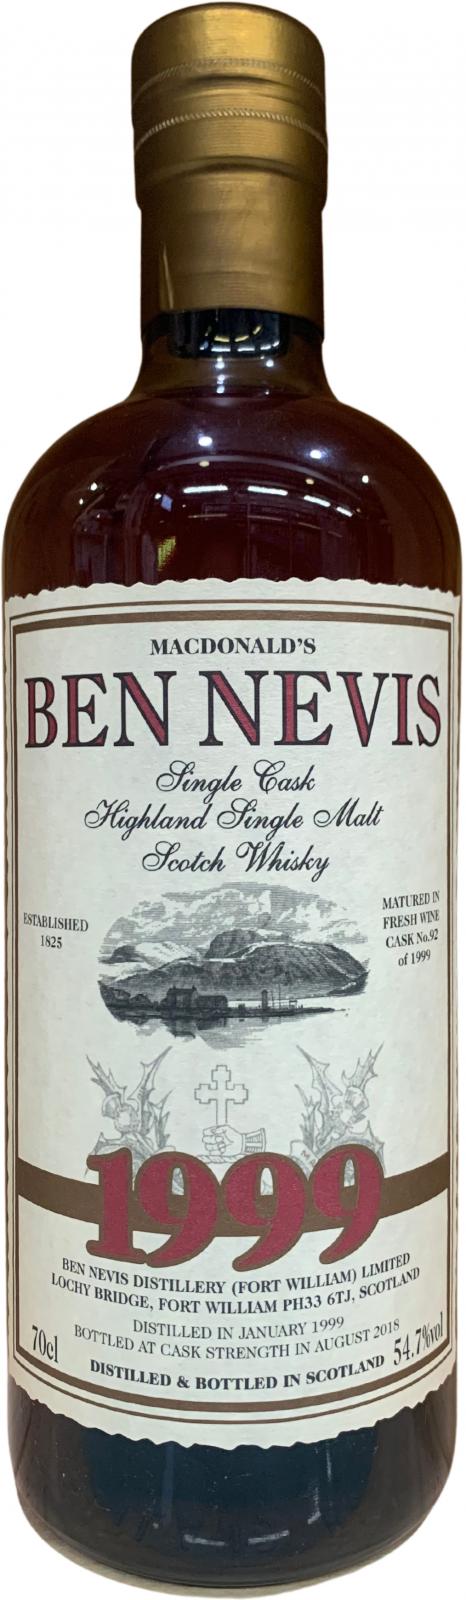 Ben Nevis 1999 Fresh Wine Cask 92 54.7% 700ml